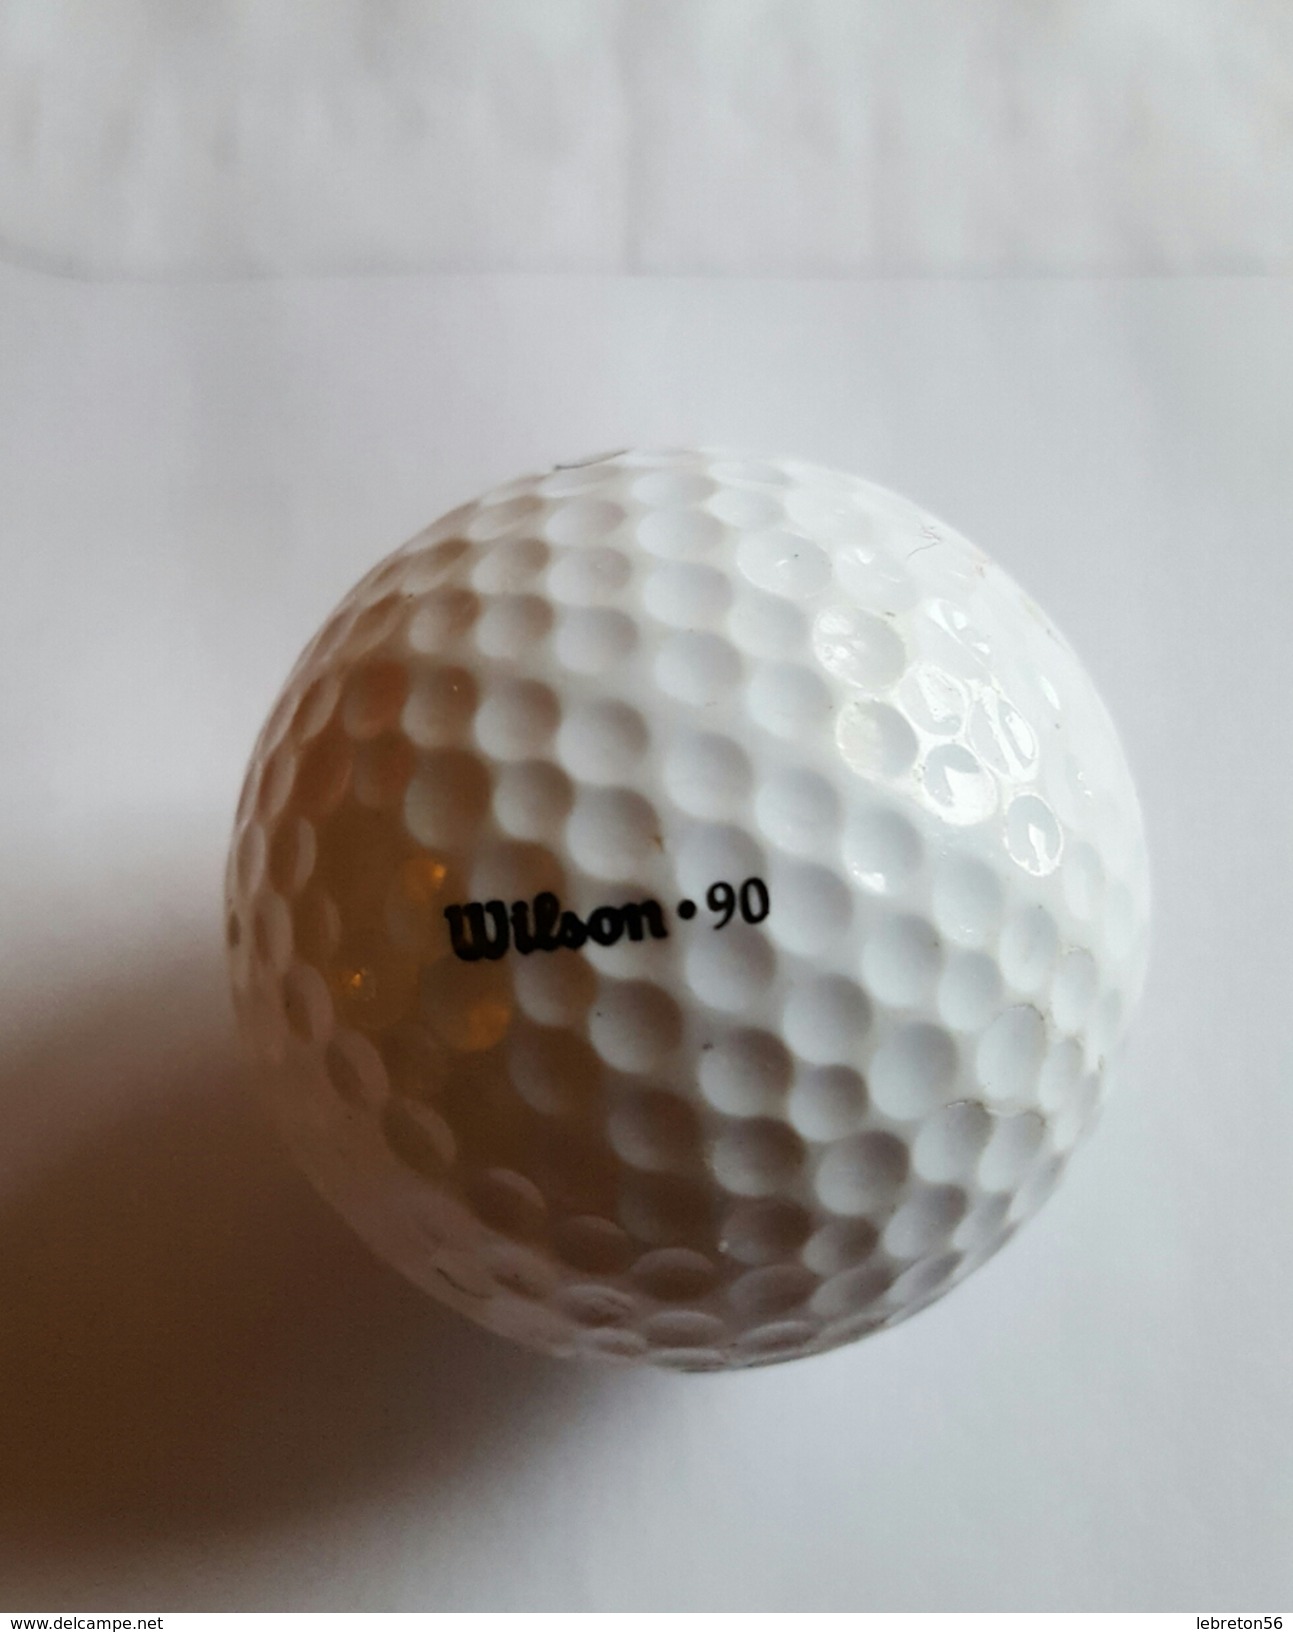 Joli 1 Balle De Golf Collection ULTRA 3 Wilson.90 - Habillement, Souvenirs & Autres